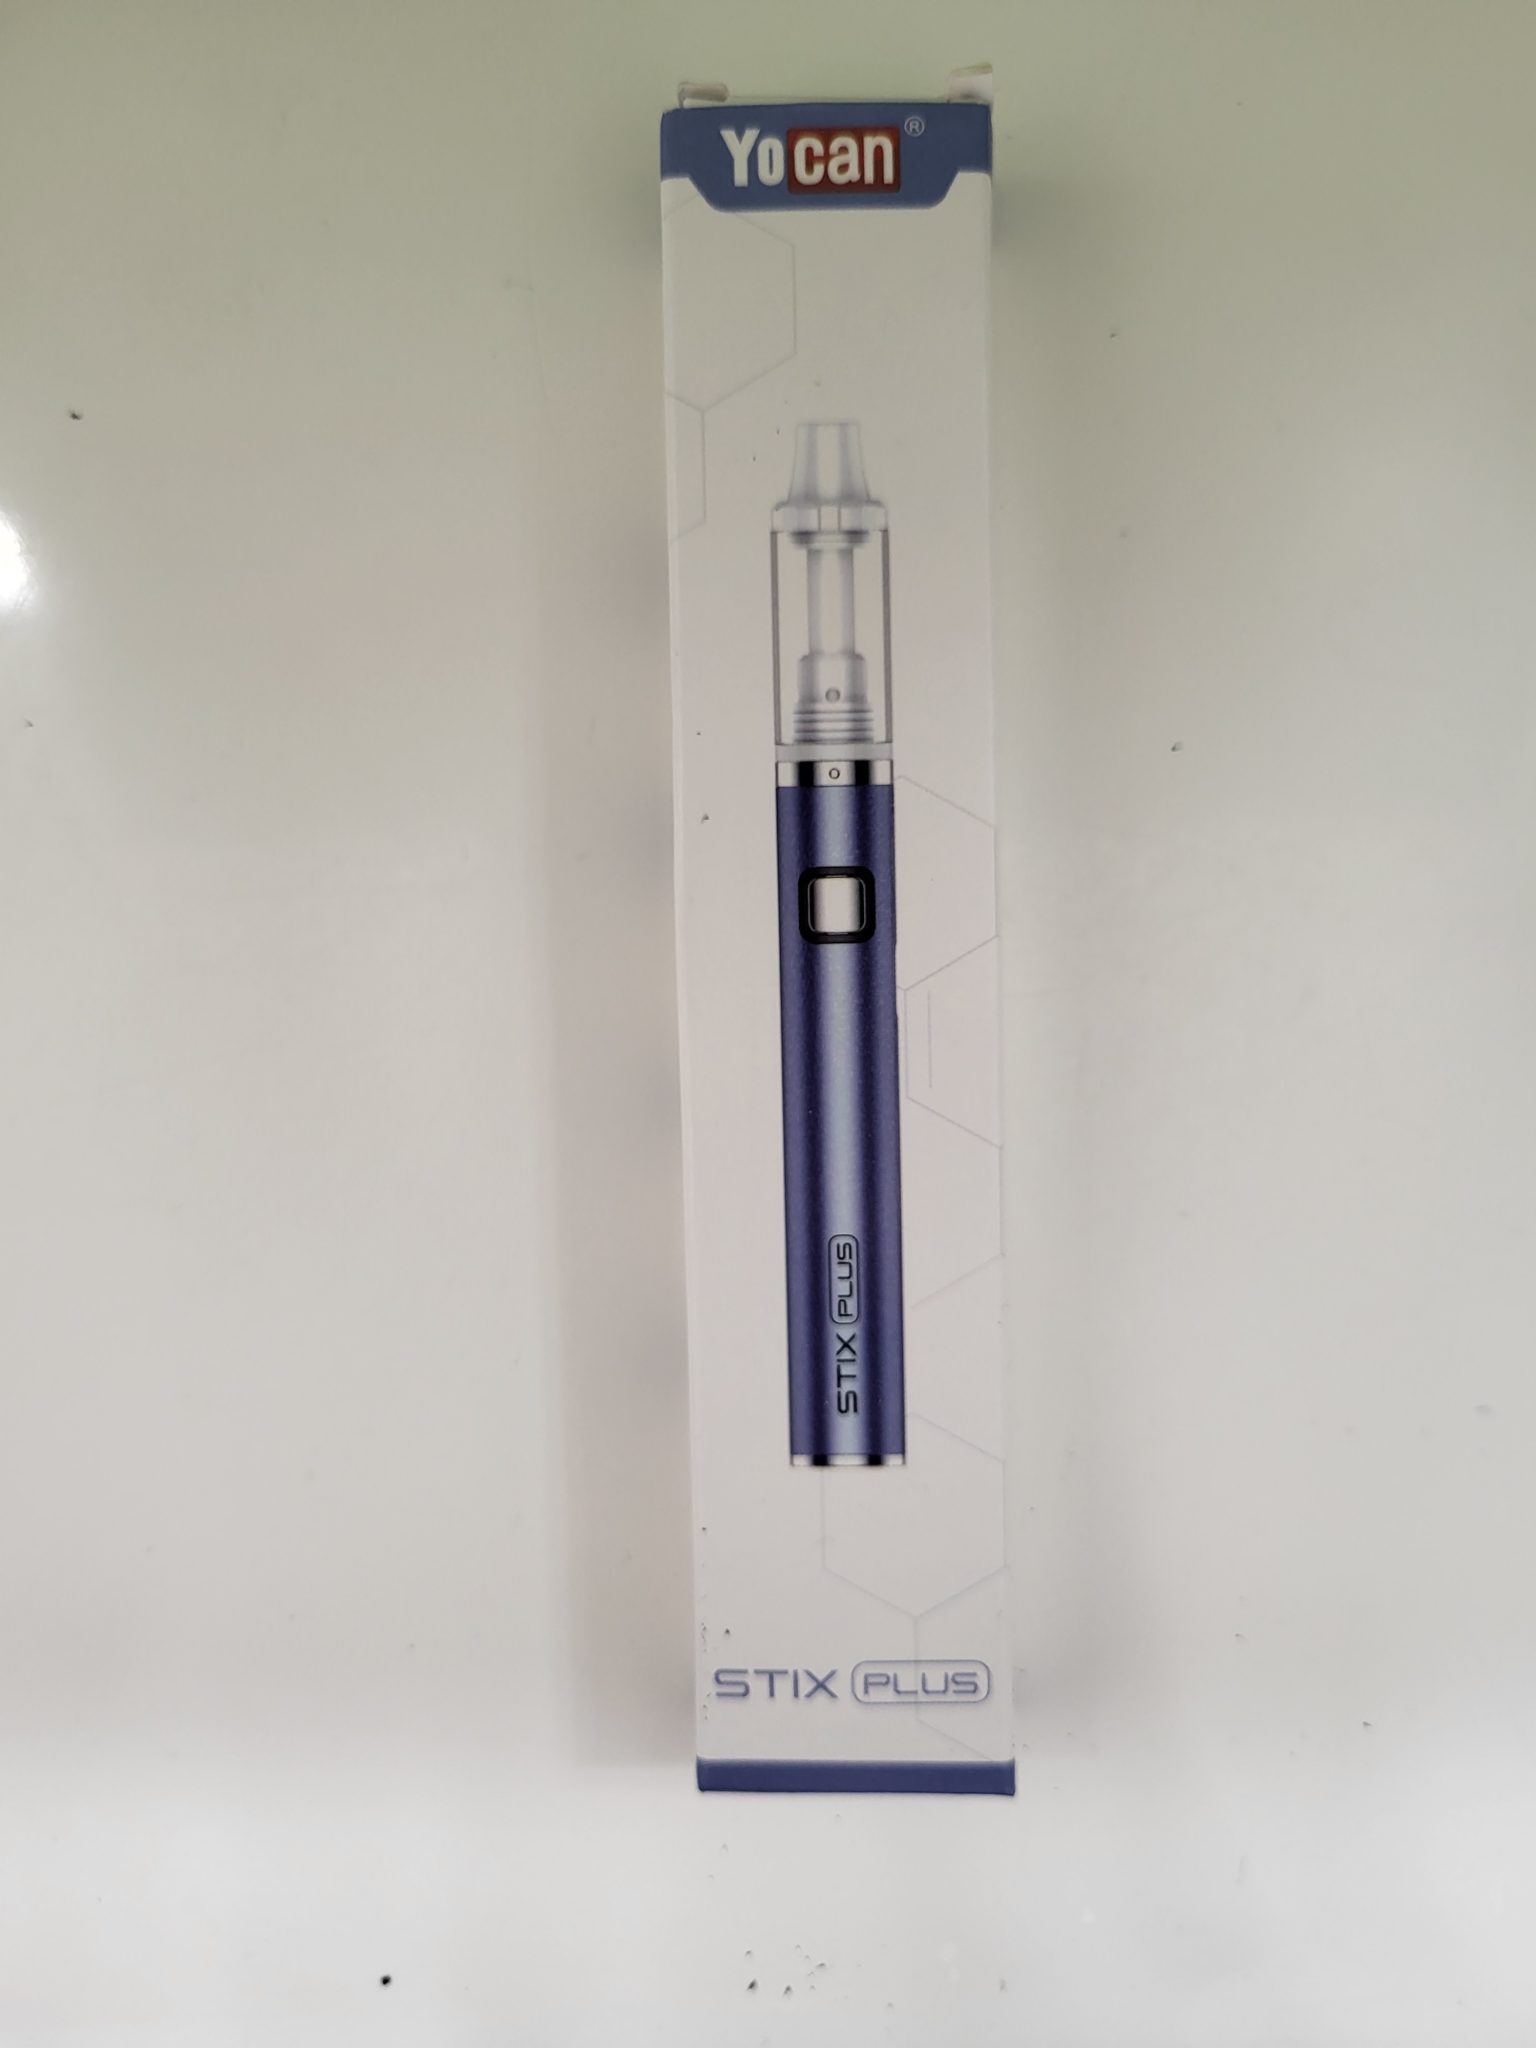 Yocan Stix Plus Vape Oil Pen